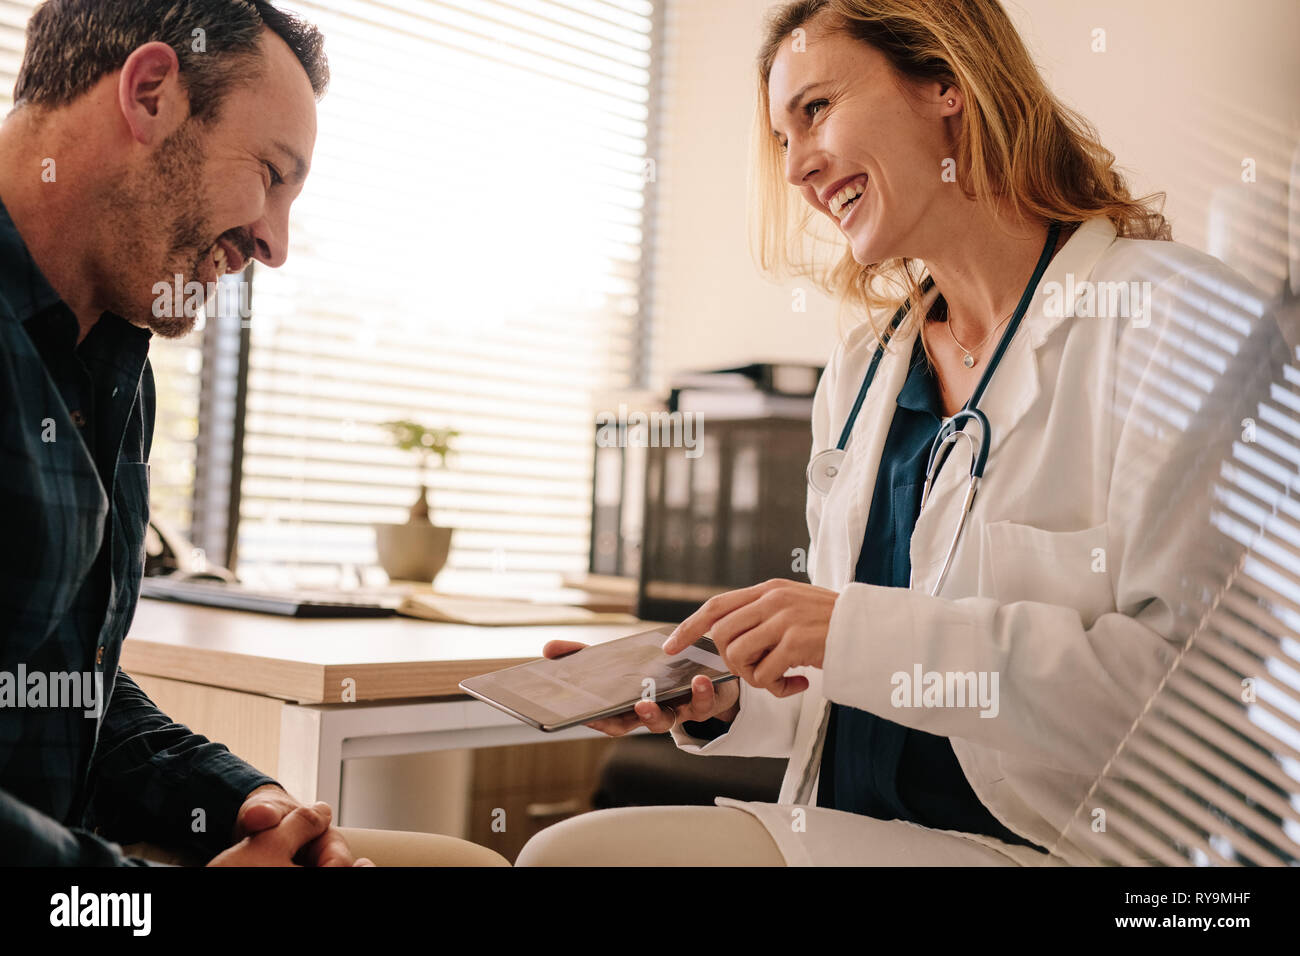 Doctora mostrando buenos resultados de prueba a un paciente masculino. Profesionales médicos sonrientes compartir buenos resultados con su paciente. Foto de stock